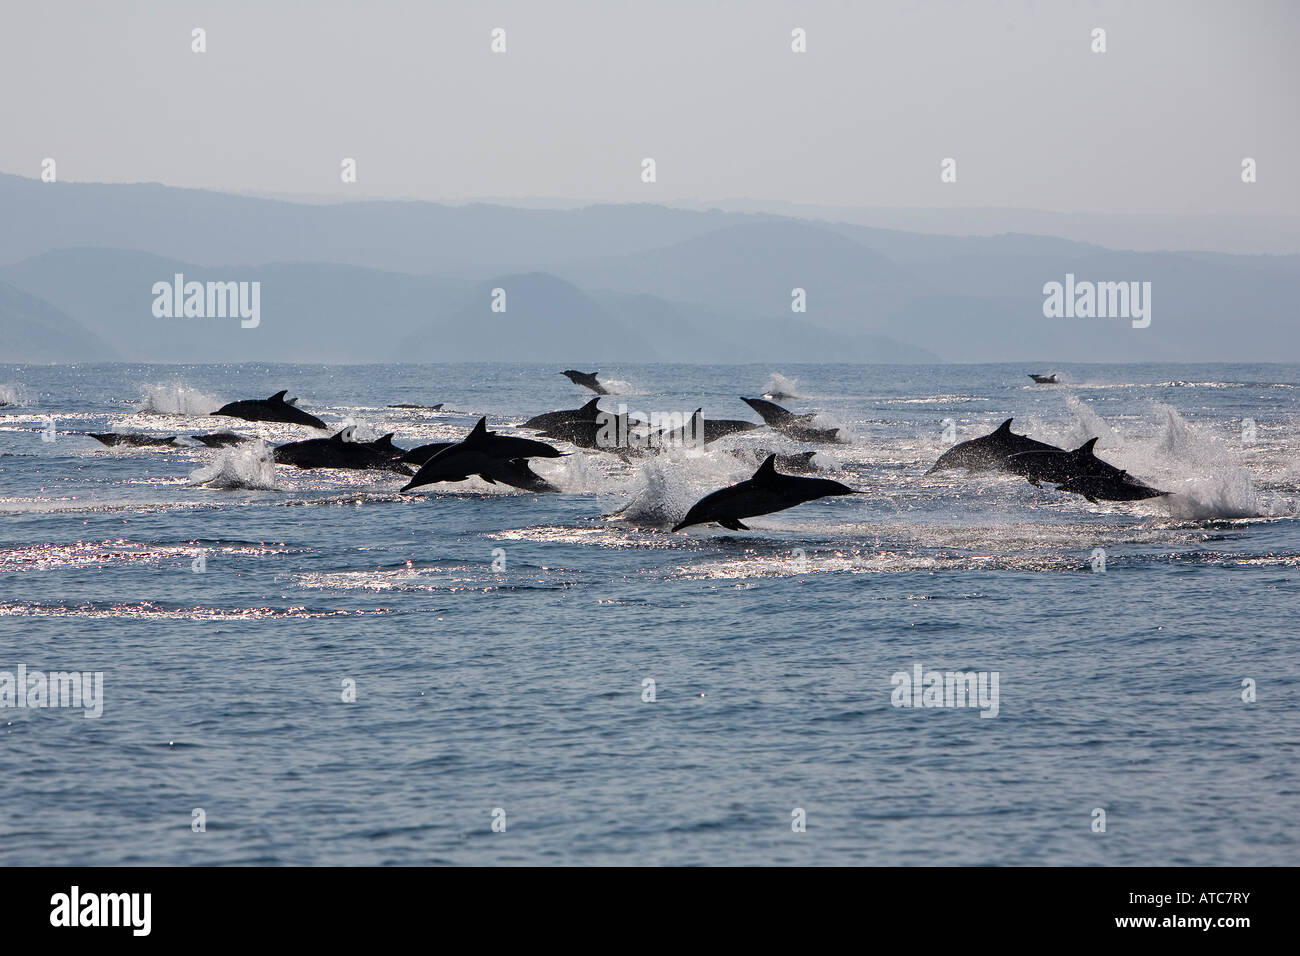 langer Schnabel gemeine Delfine Delphinus Capensis wilde Küste Transkei südöstlich Afrika Indischer Ozean Mosambik Stockfoto